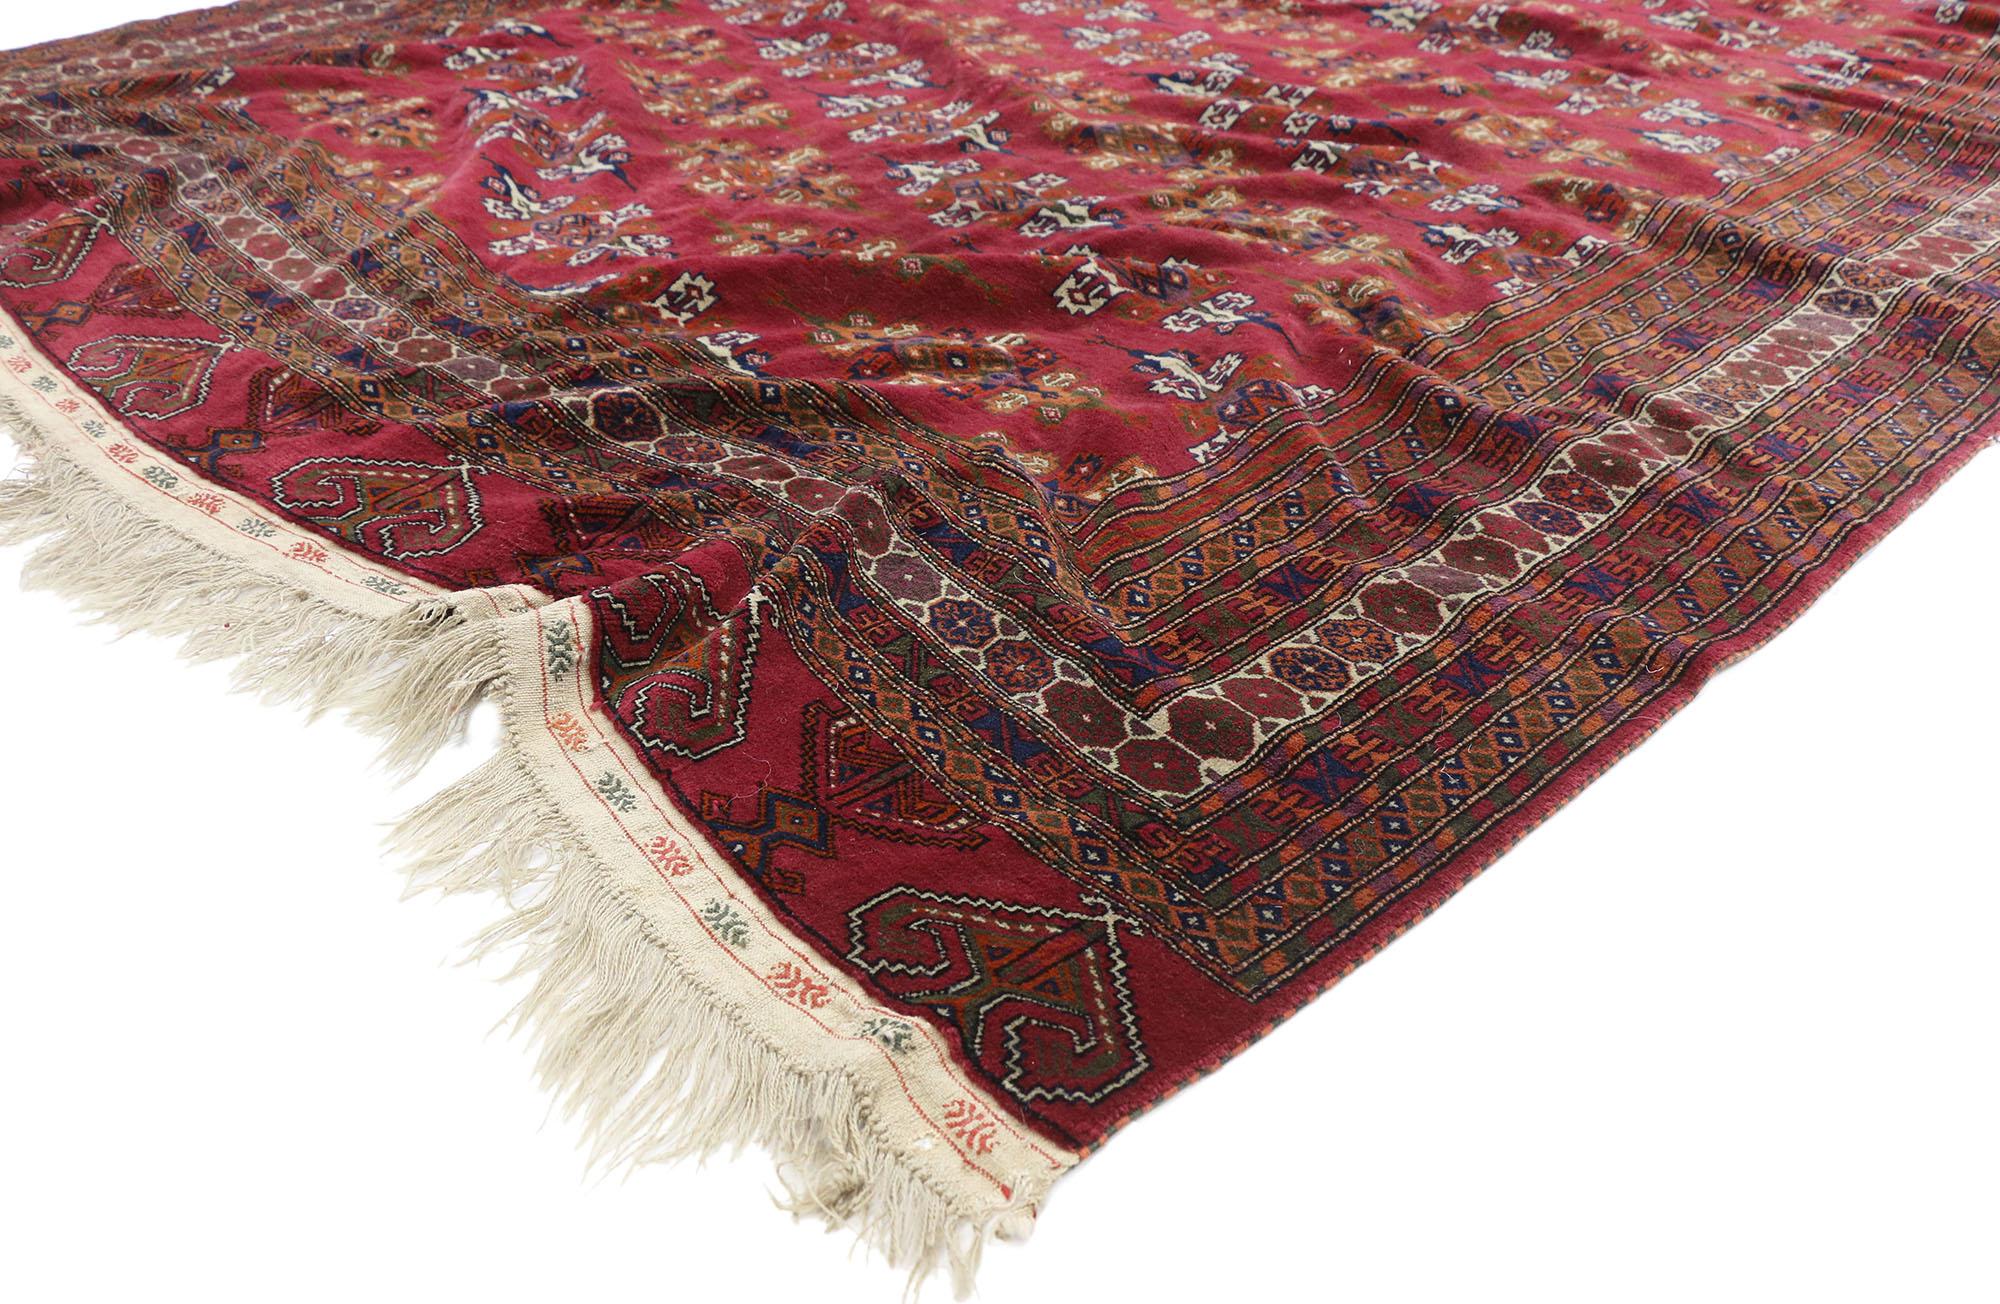 20793 Tapis persan vintage Baluch, 07'03 x 10'05. Les tapis persans baloutches sont des textiles tissés à la main dans la région du Baloutchistan, fabriqués par le peuple baloutche. Caractérisés par des dessins tribaux, des couleurs terreuses et des